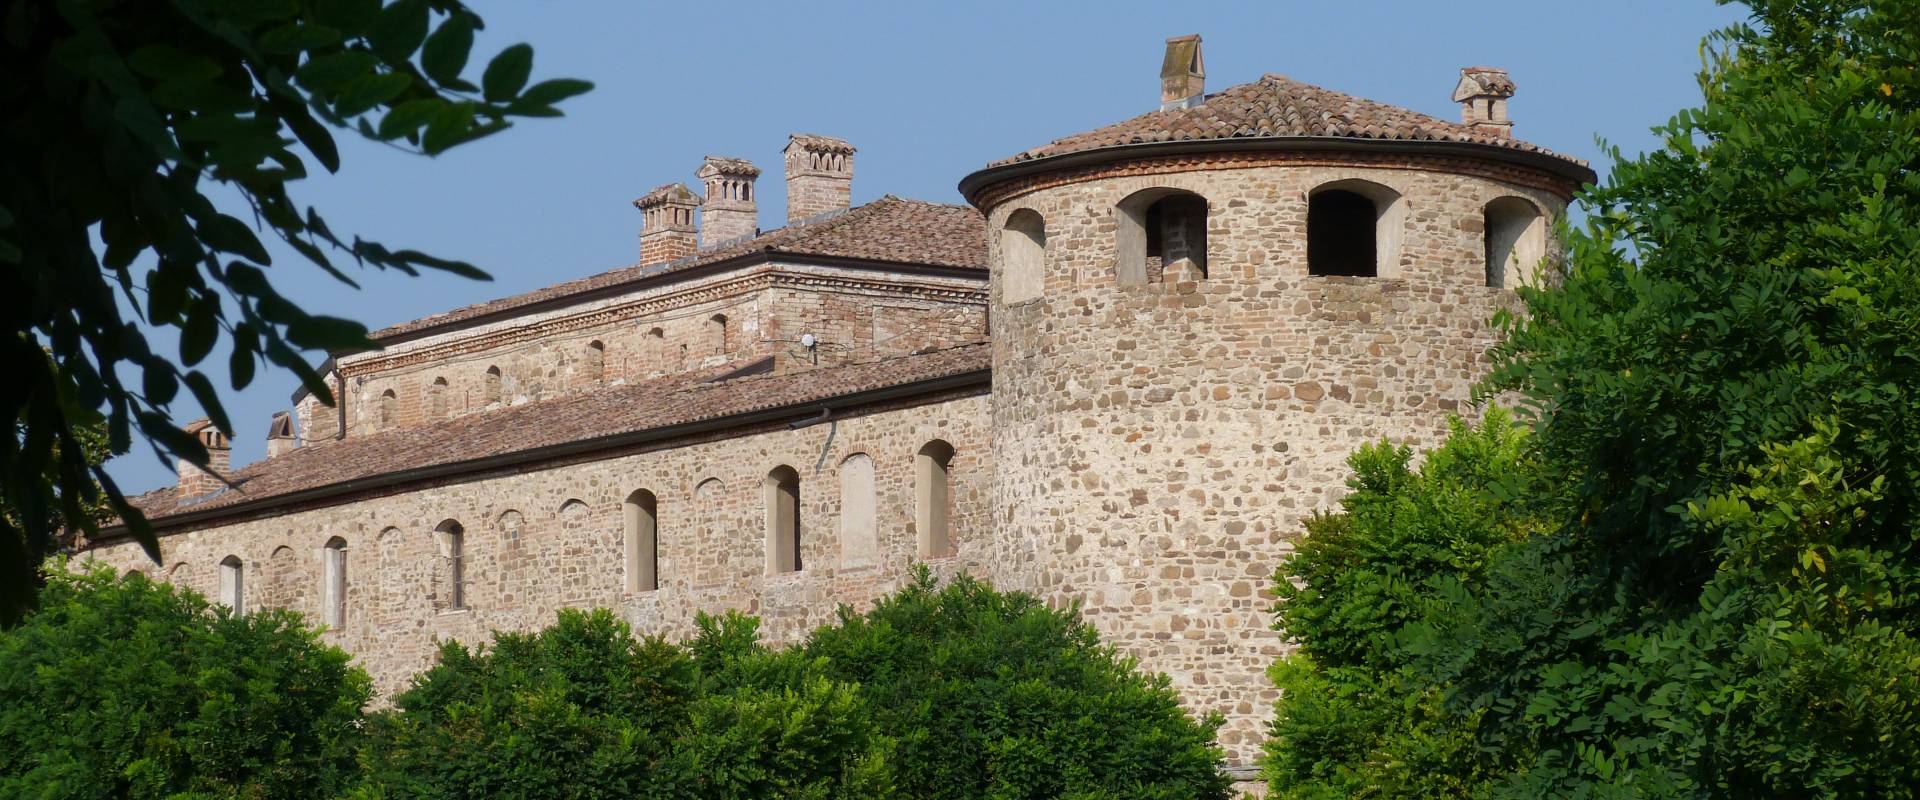 Castello di Agazzano foto di Norman.bongiorni